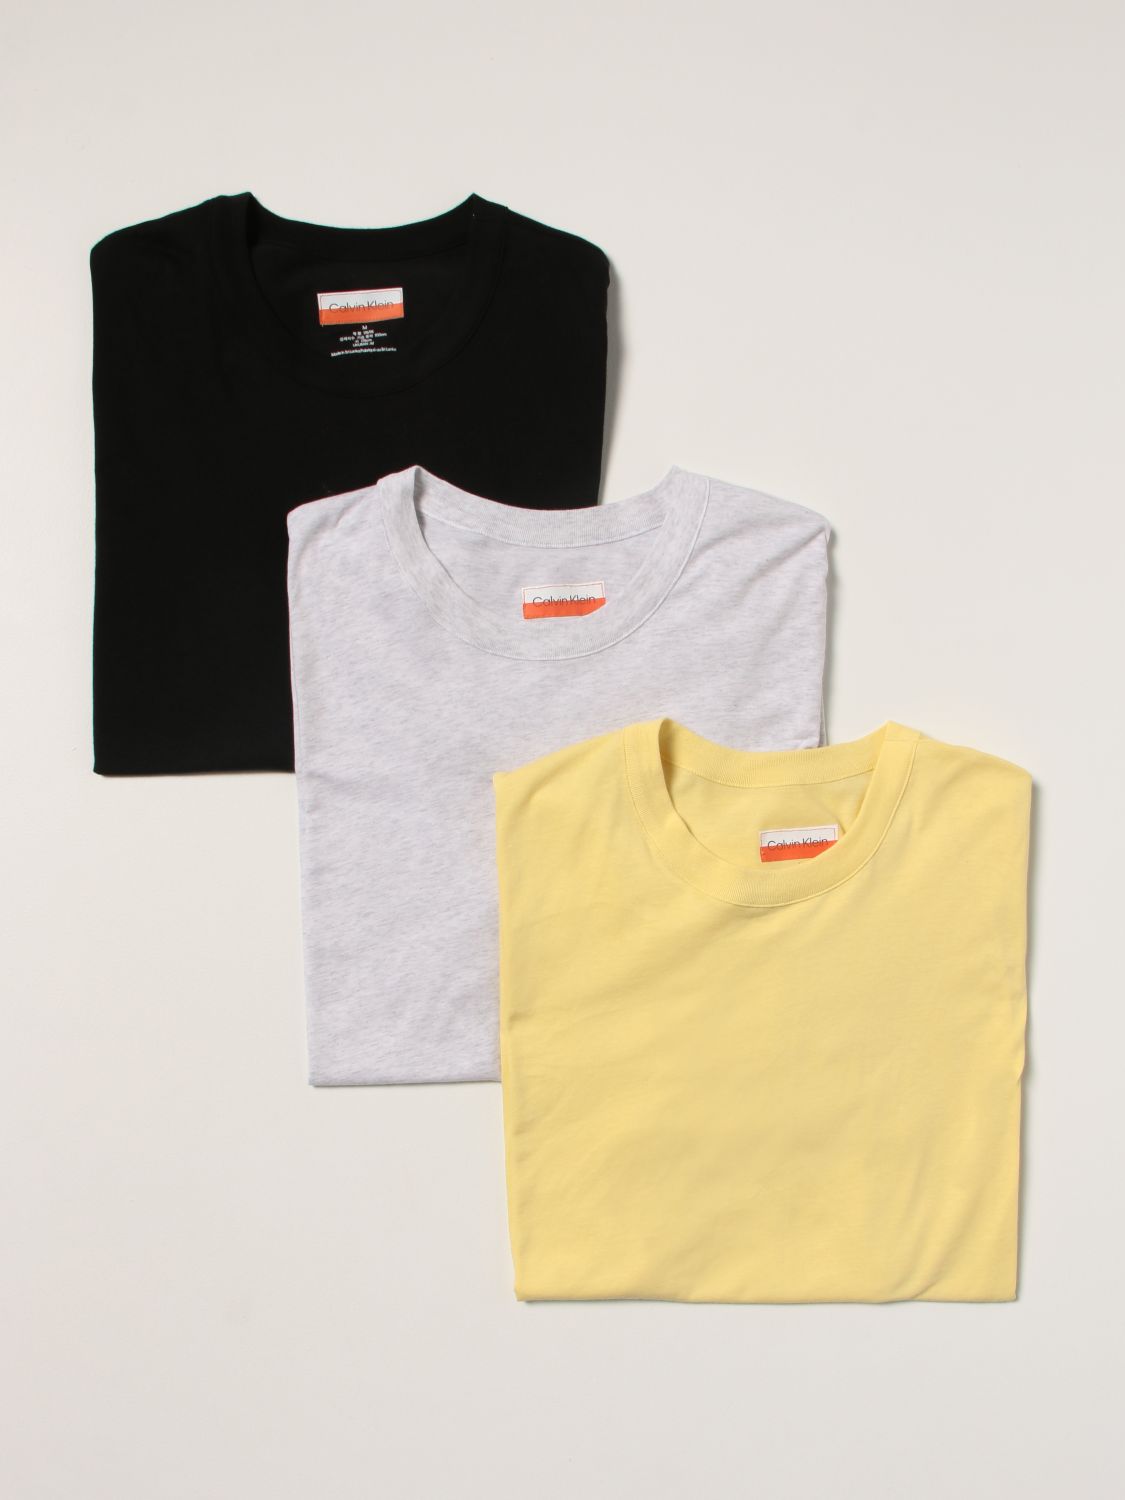 T恤 Heron Preston For Calvin Klein: Orange 2.0 Heron Preston x Calvin Klein 棉质 T恤三件套 黑色 1